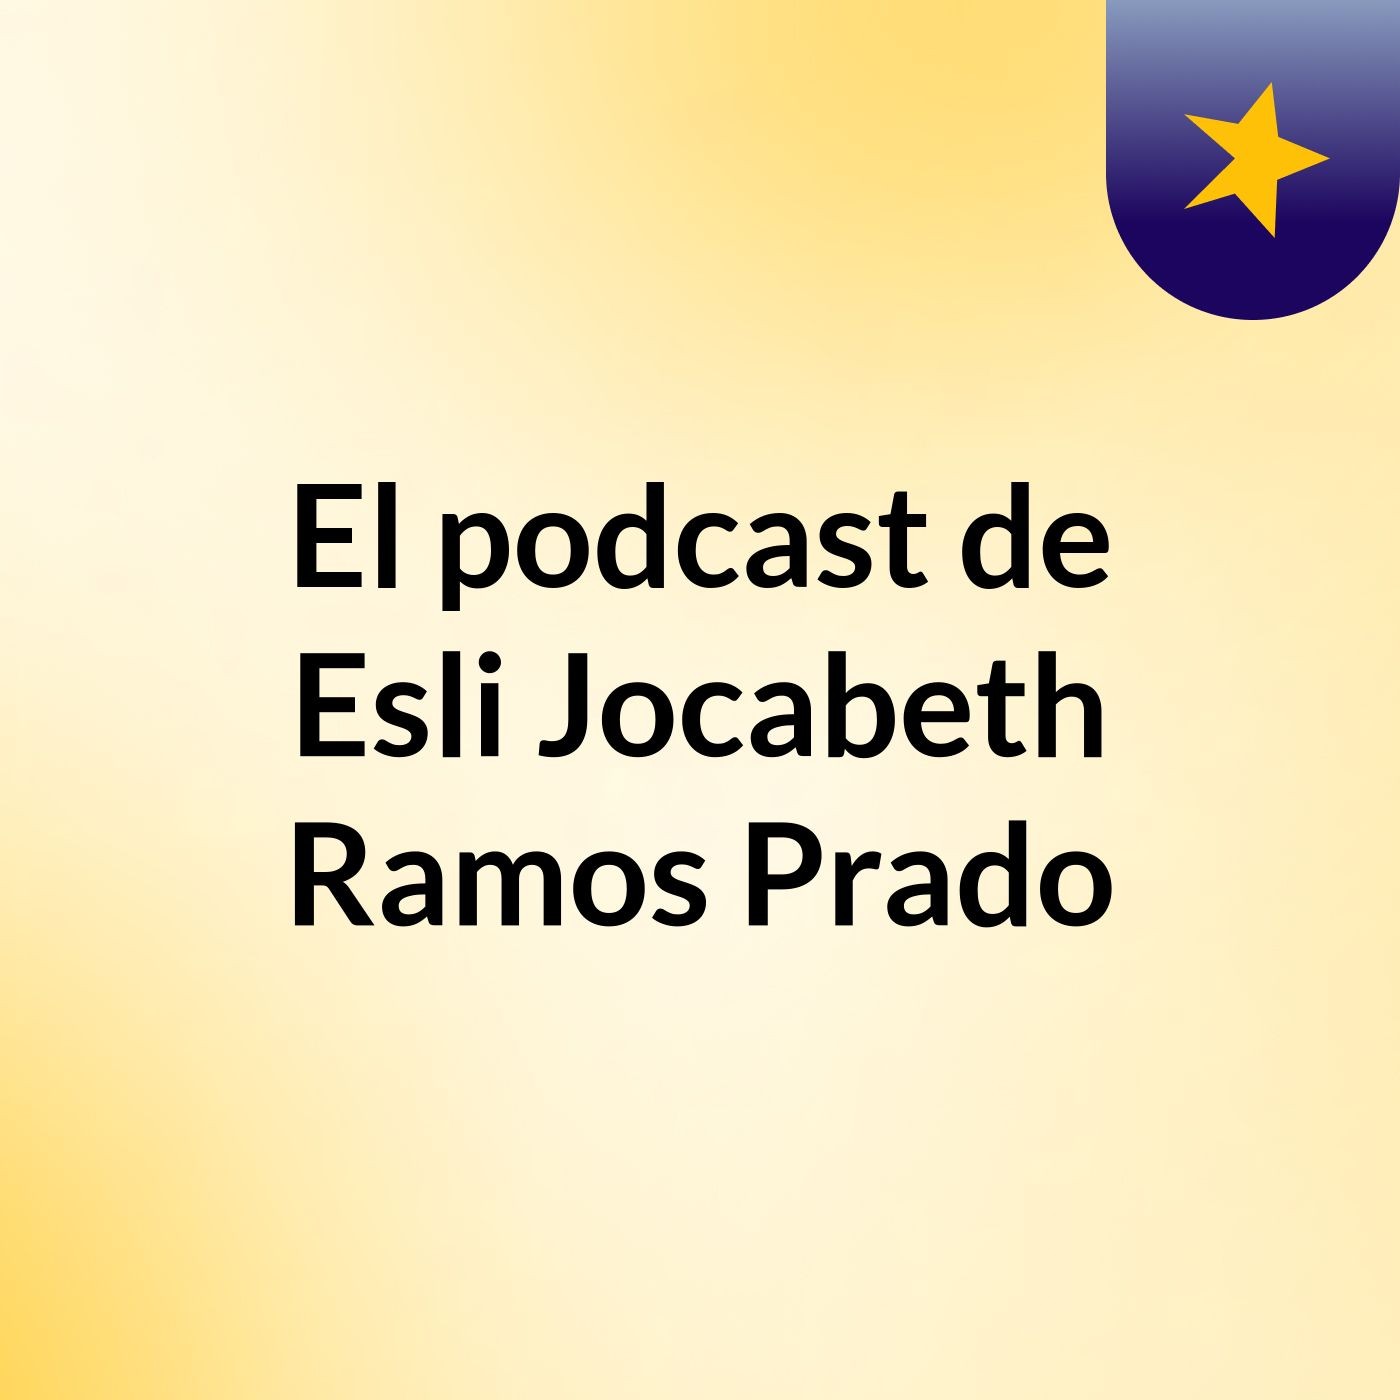 El podcast de Esli Jocabeth Ramos Prado